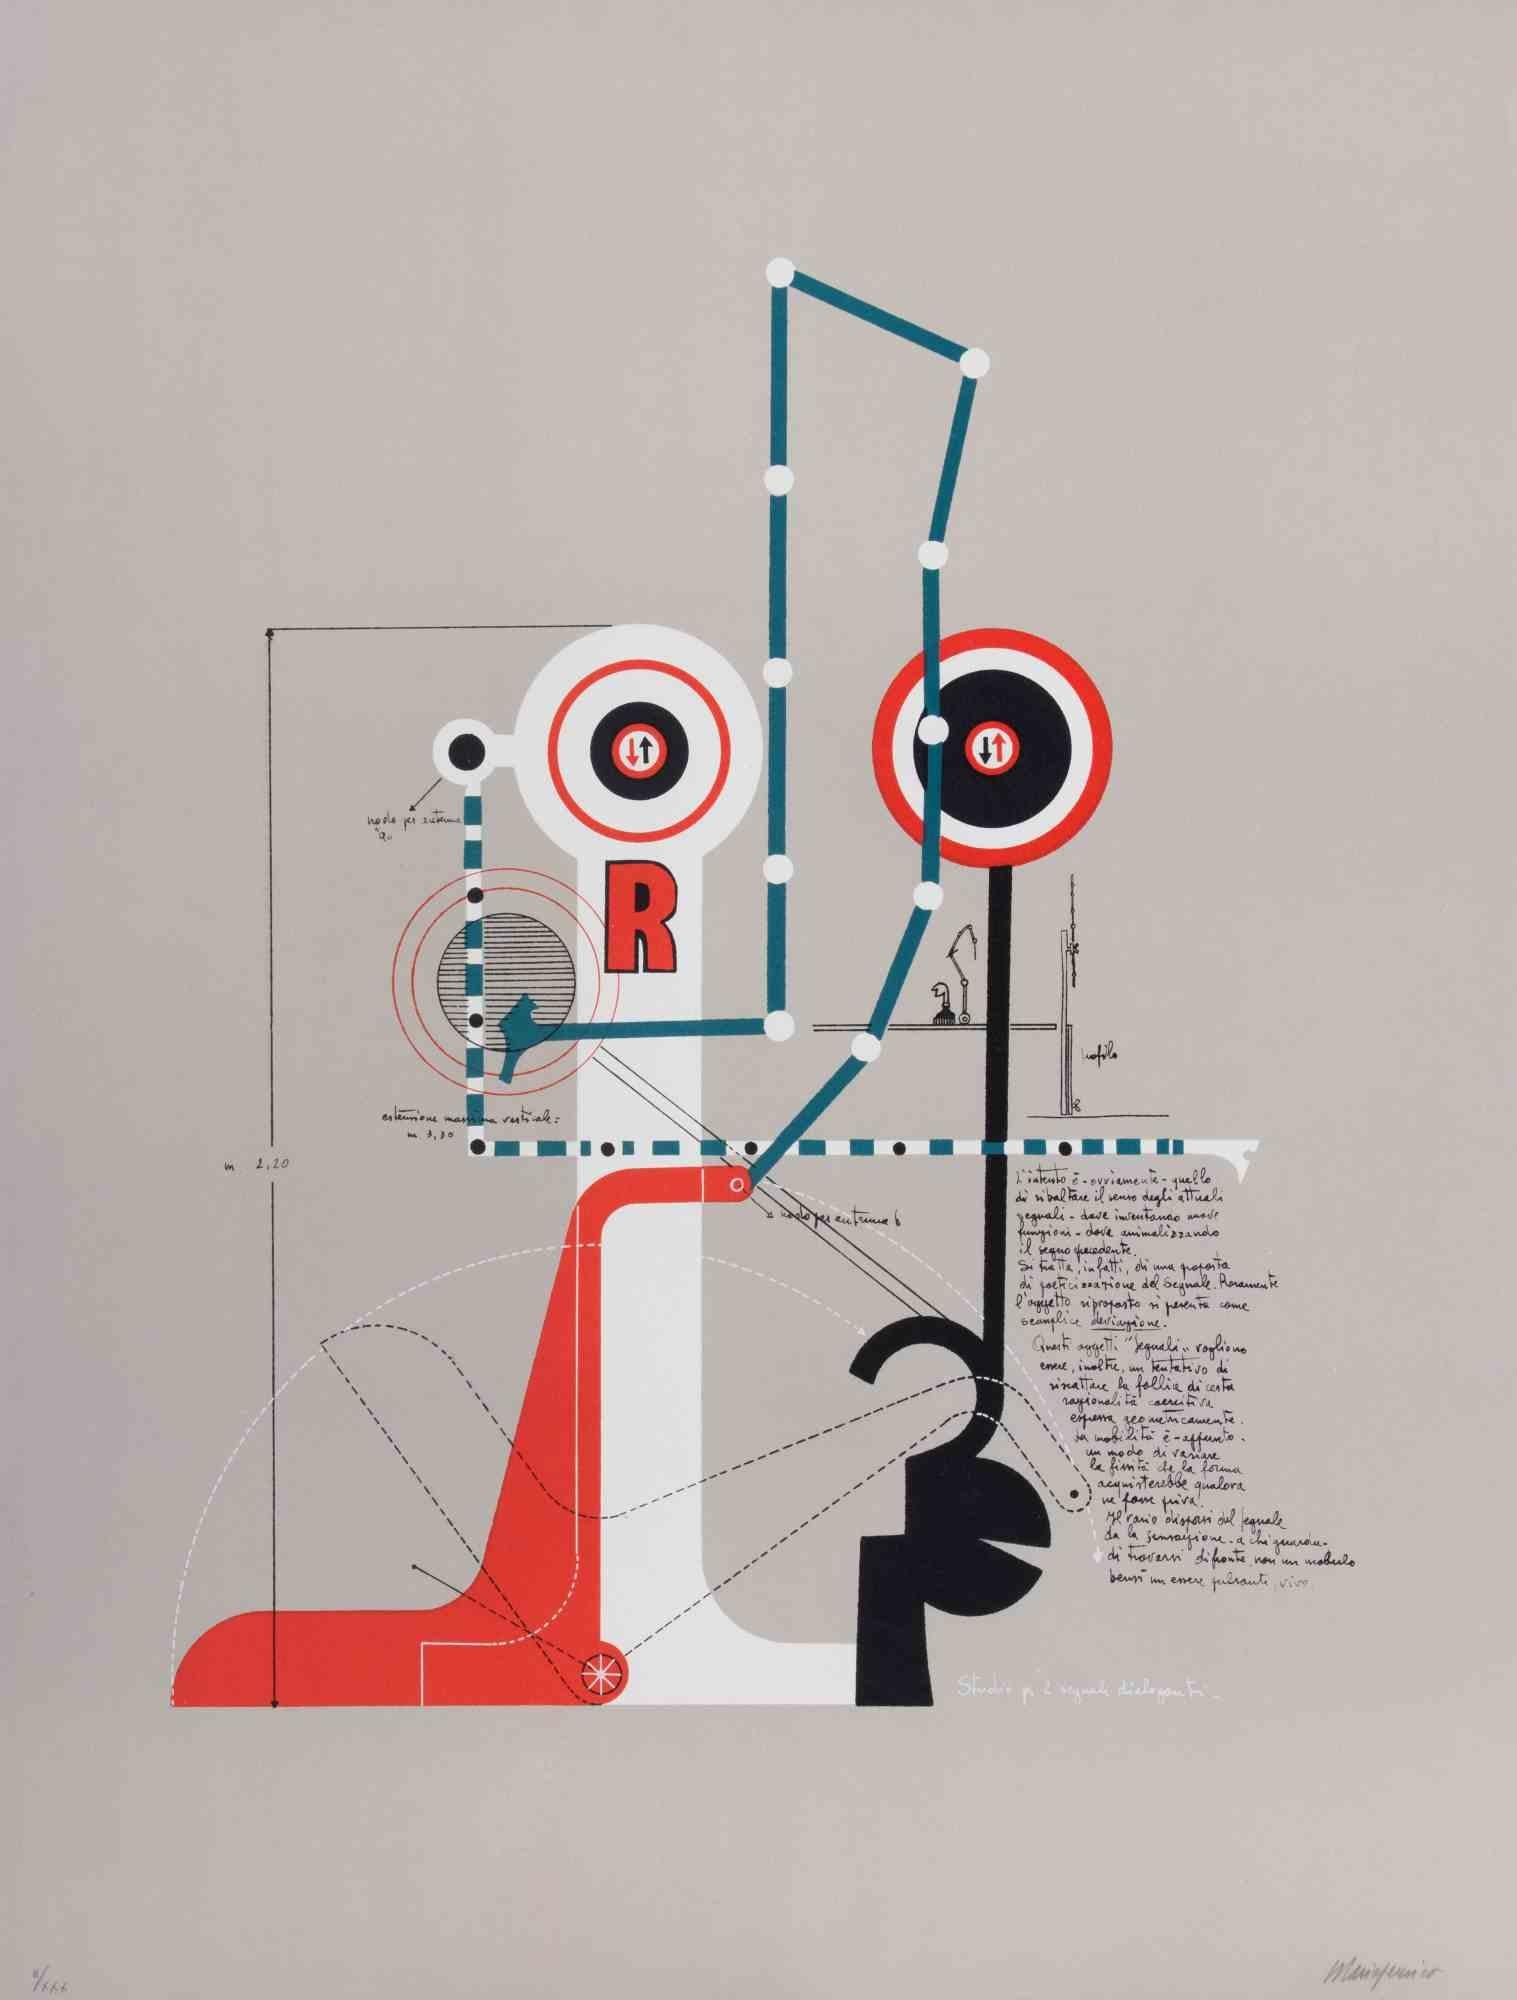 Studie für zwei kommunizierende Signale ist ein zeitgenössisches Kunstwerk von Mario Persico aus den 1970er Jahren. 

Gemischtfarbige Lithographie. 

Titel am unteren Rand.

Vom Künstler handsigniert. 

Am unteren Rand nummeriert. Ausgabe von